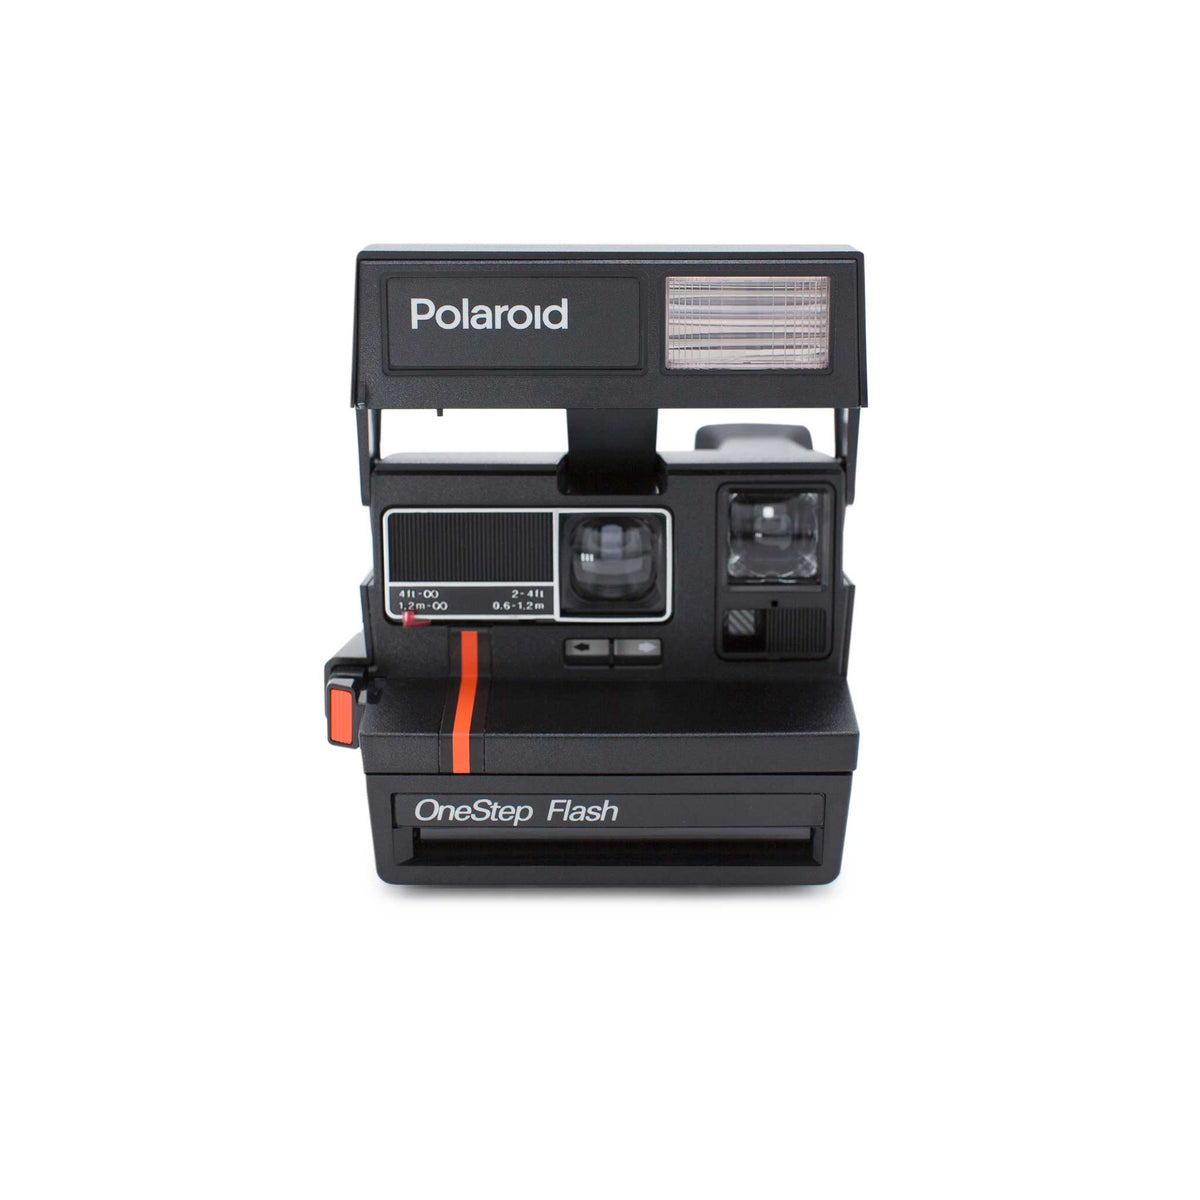 Film Polaroid® 600